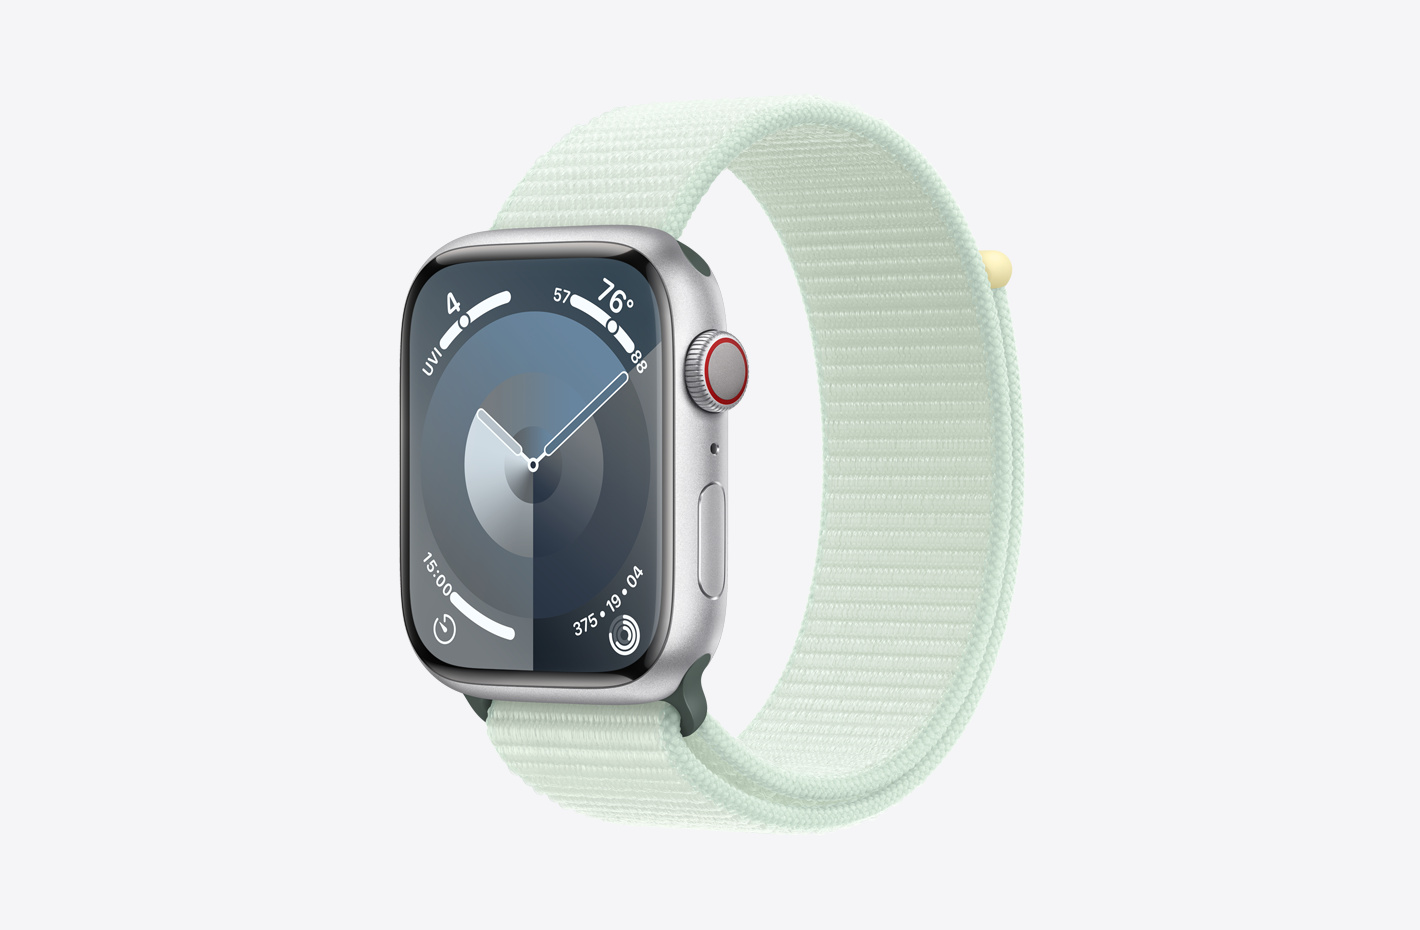 Apple Watch med urkasse i sølvfarvet aluminium med mat finish og skrå visning af Sport Loop i lys mynte (grøn), som er en vævet nylonrem i to lag med burrebåndslukning